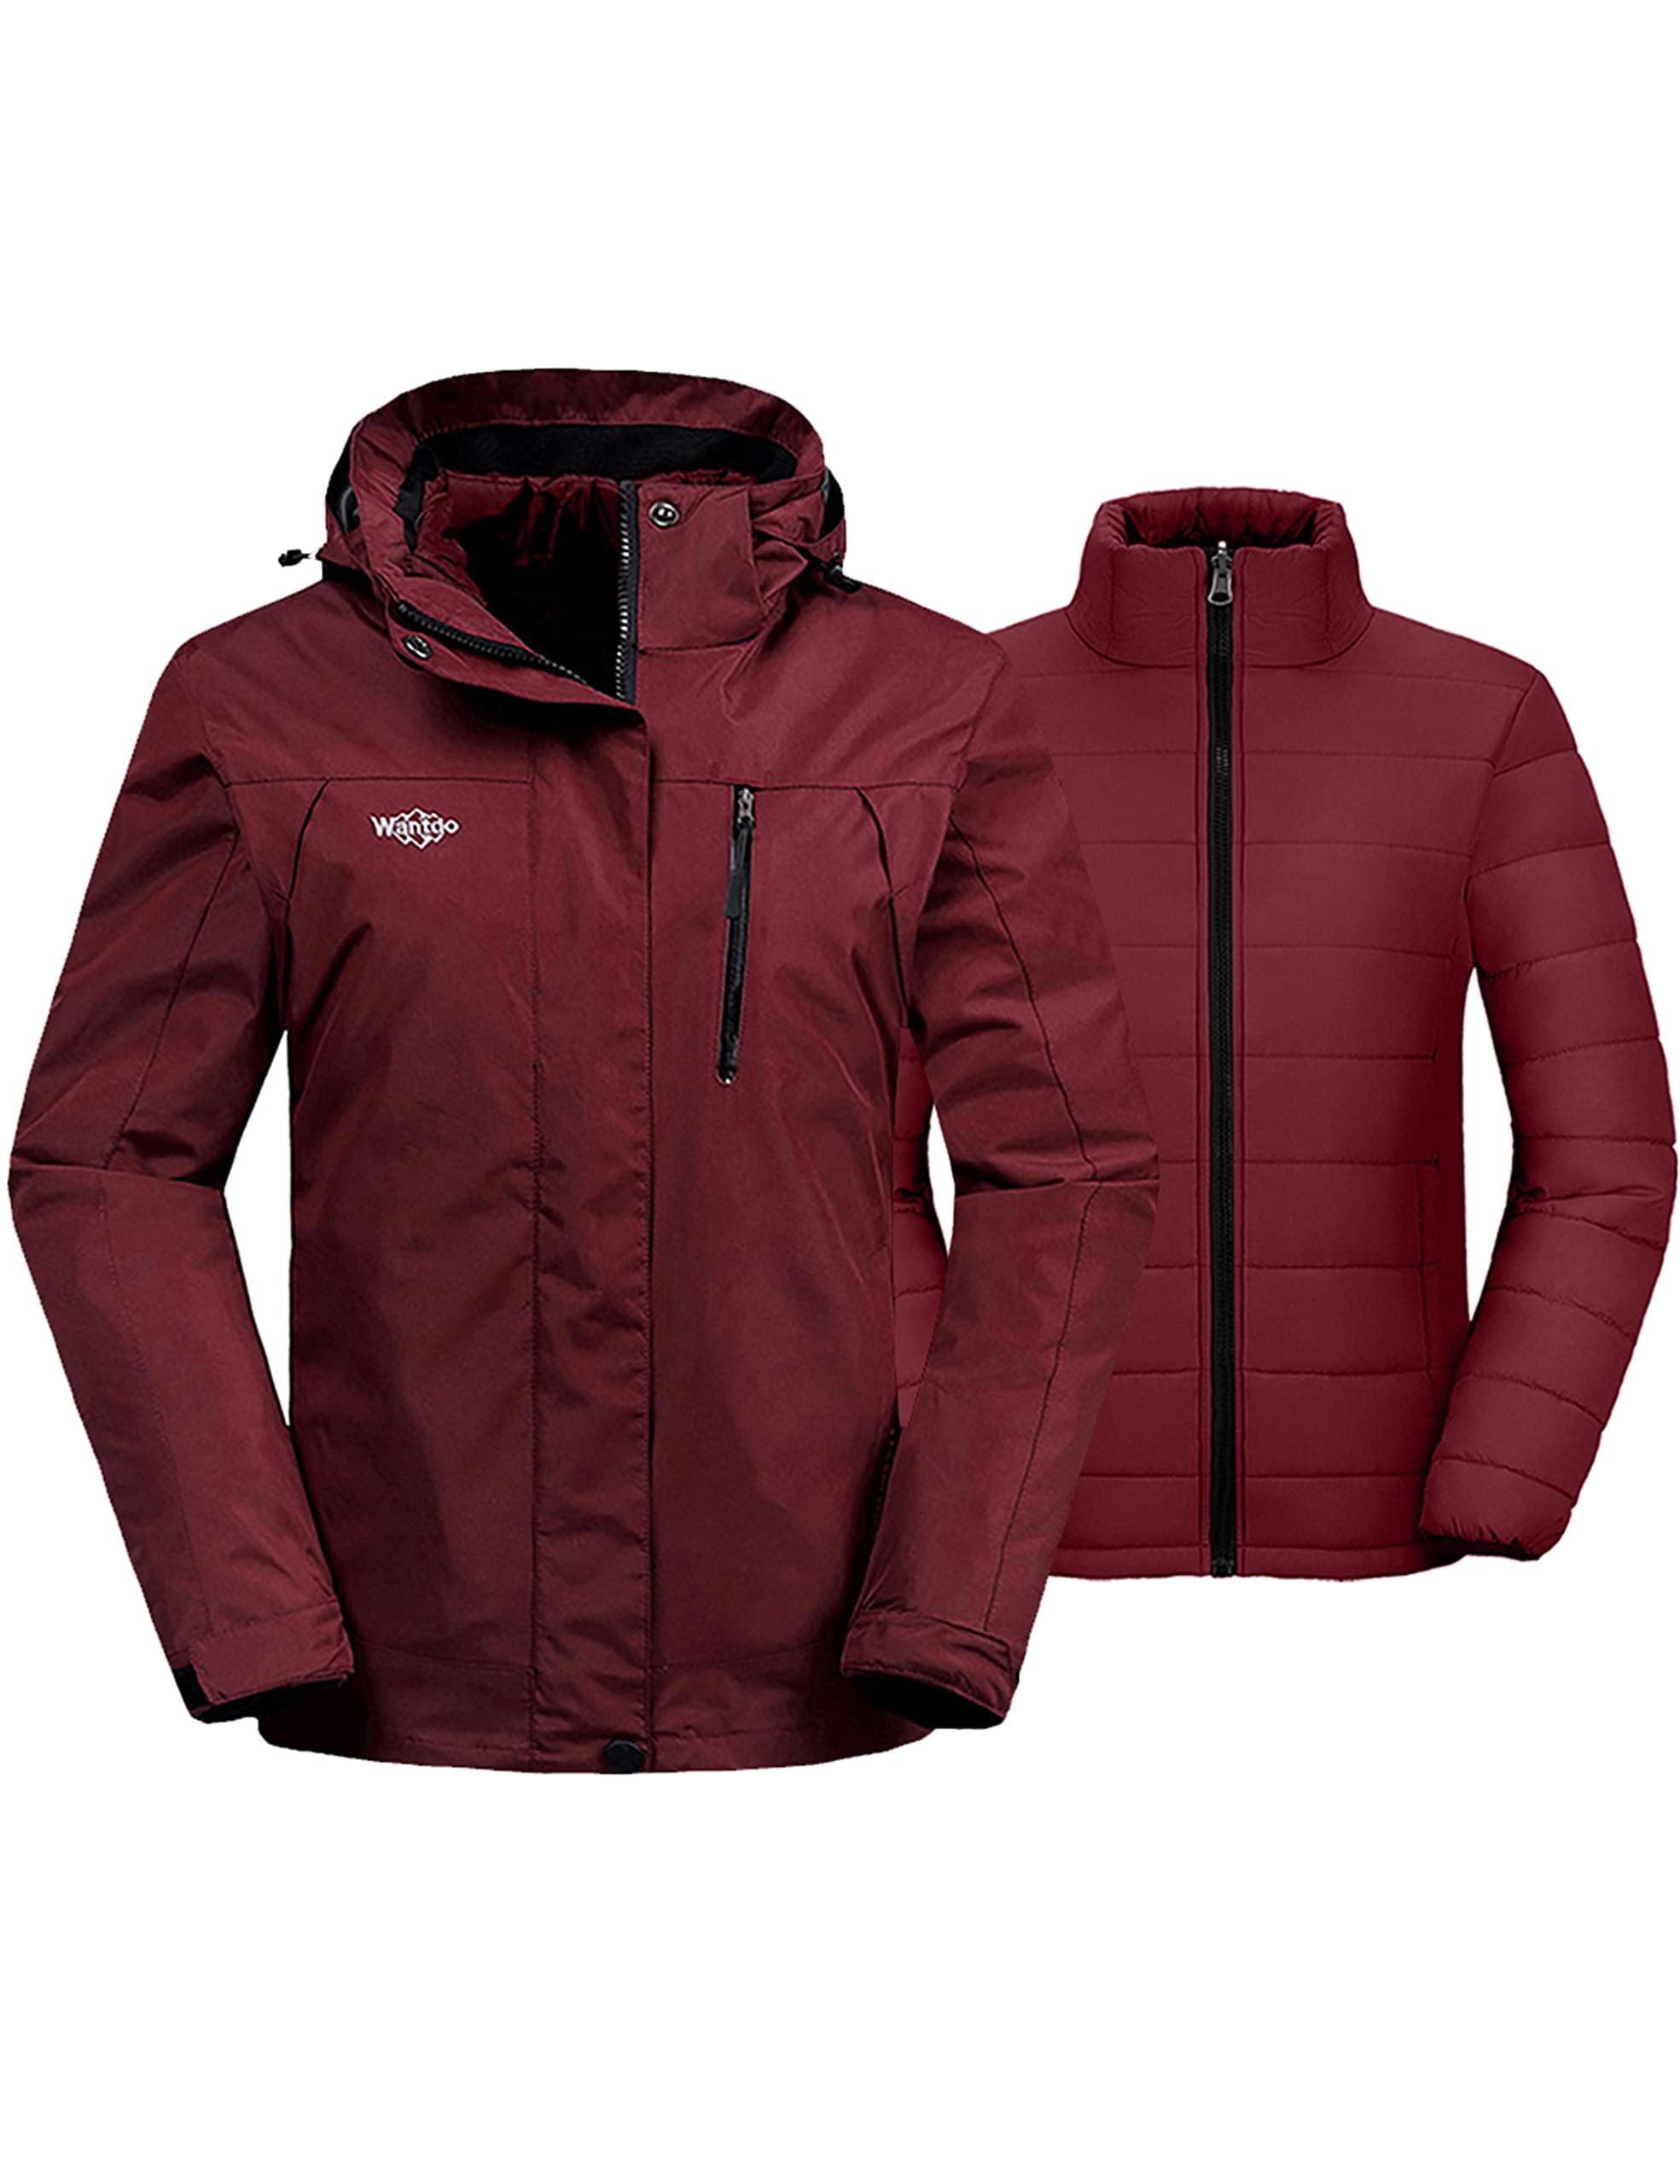 Wantdo Womens Winter Waterproof Ski Jacket Mountain Snow Windproof Rain Coat 